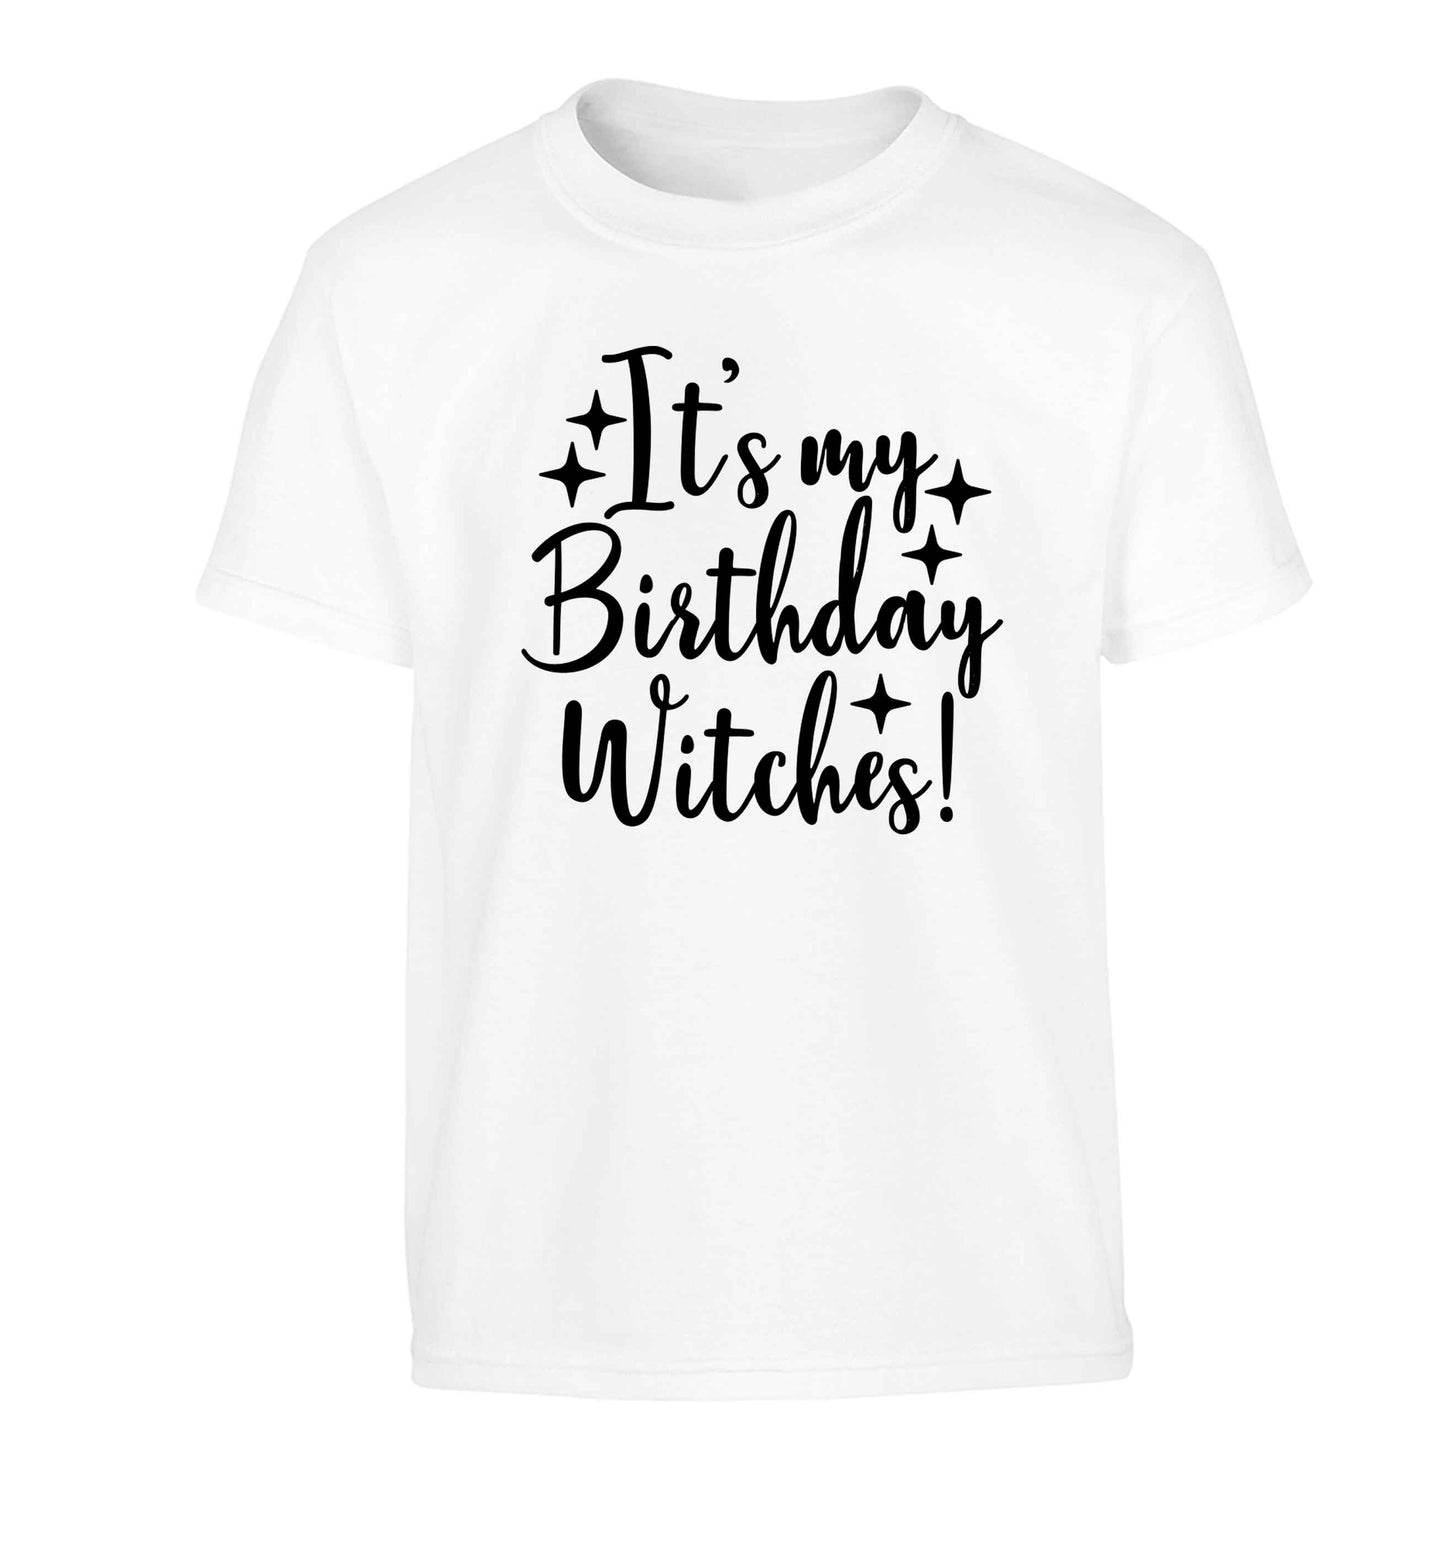 It's my birthday witches!Children's white Tshirt 12-13 Years